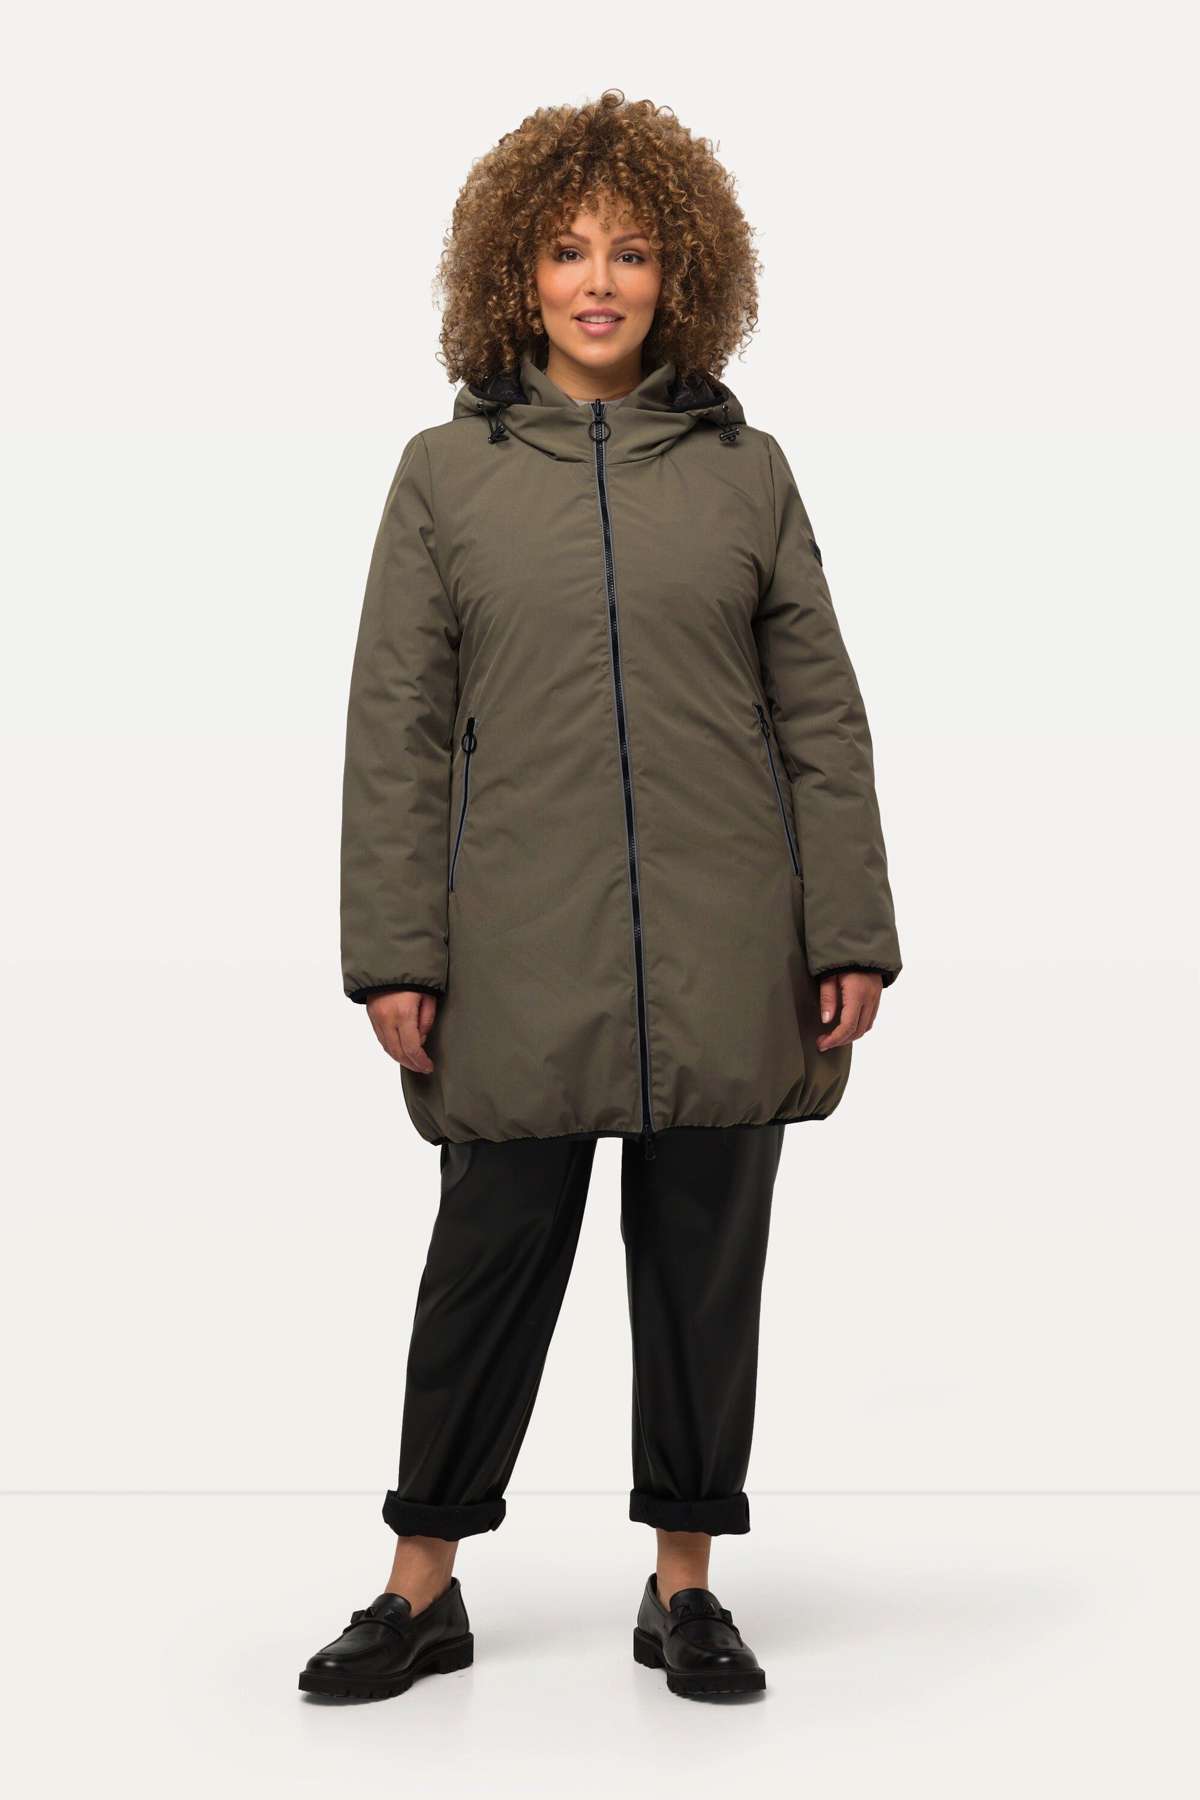 Функциональная куртка HYPRAR двусторонняя стеганая куртка светоотражатель 2-х молния